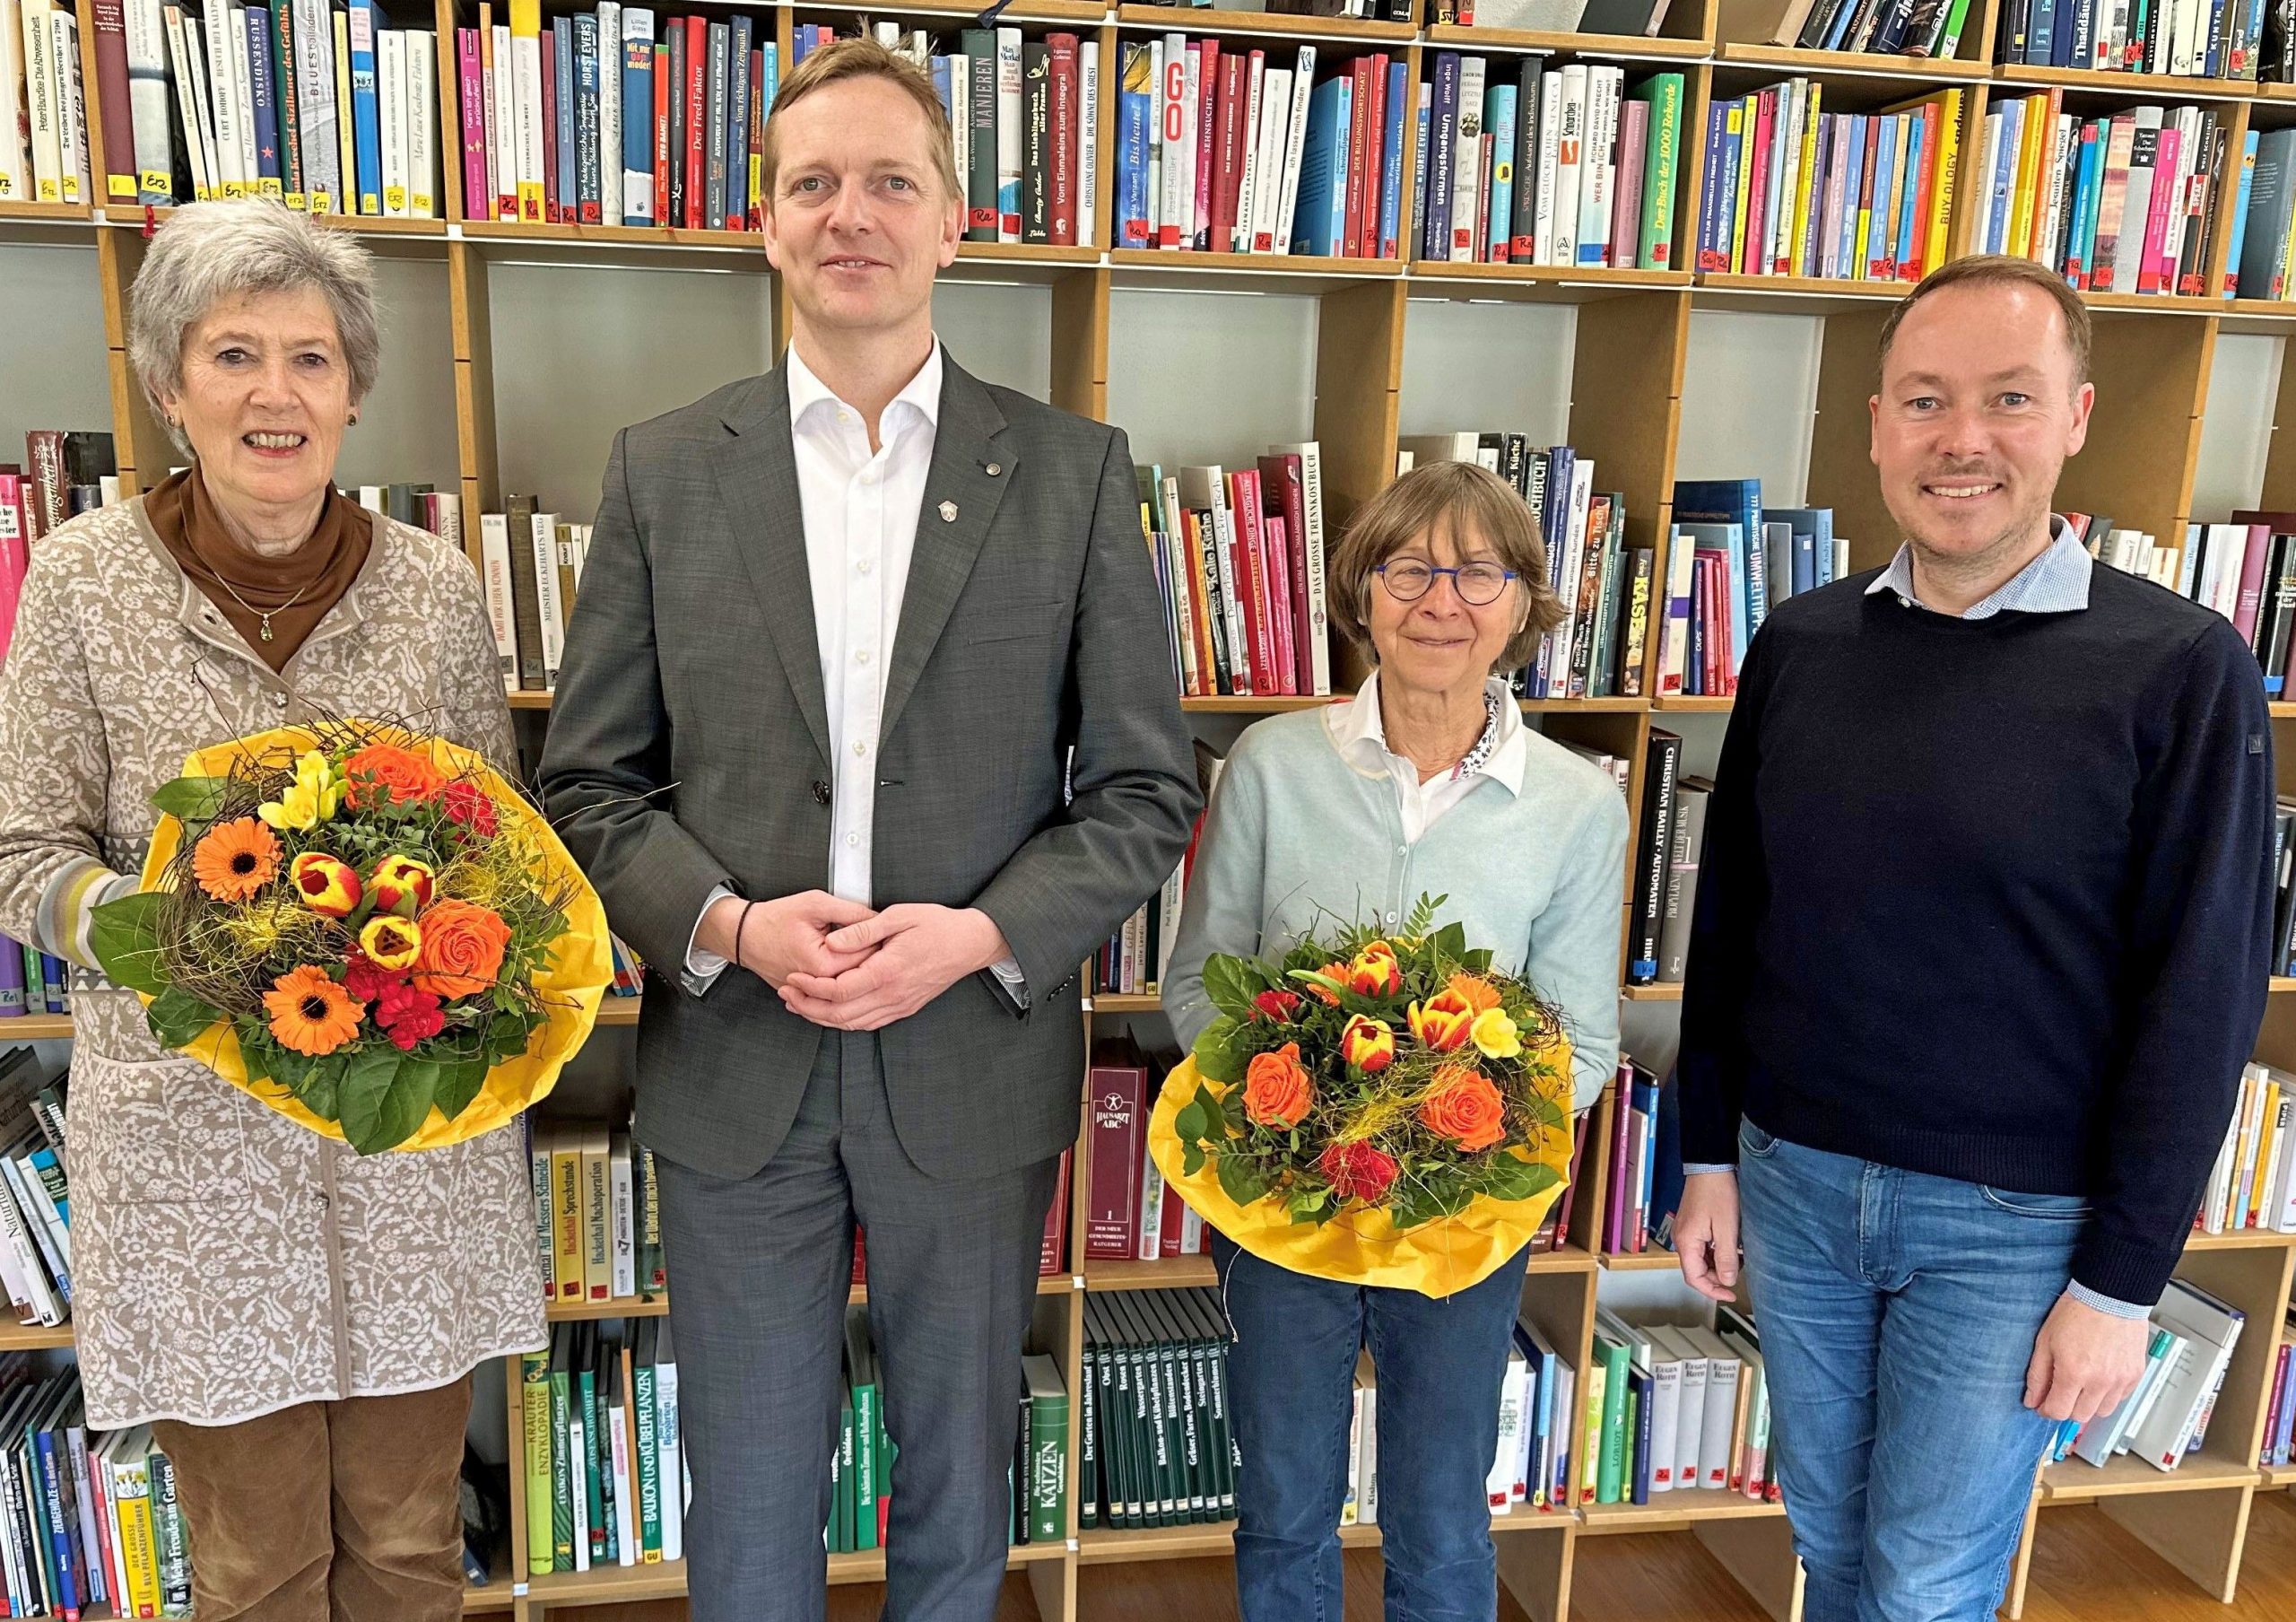 von links Ute Schwartz, Aschaus Bürgermeister Simon Frank, Christel Lenhard und Tourismuschef Herbert Reiter vor einer Wand mit Büchern. Die beiden Damen halten je einen bunten Blumenstrauß in den Händen